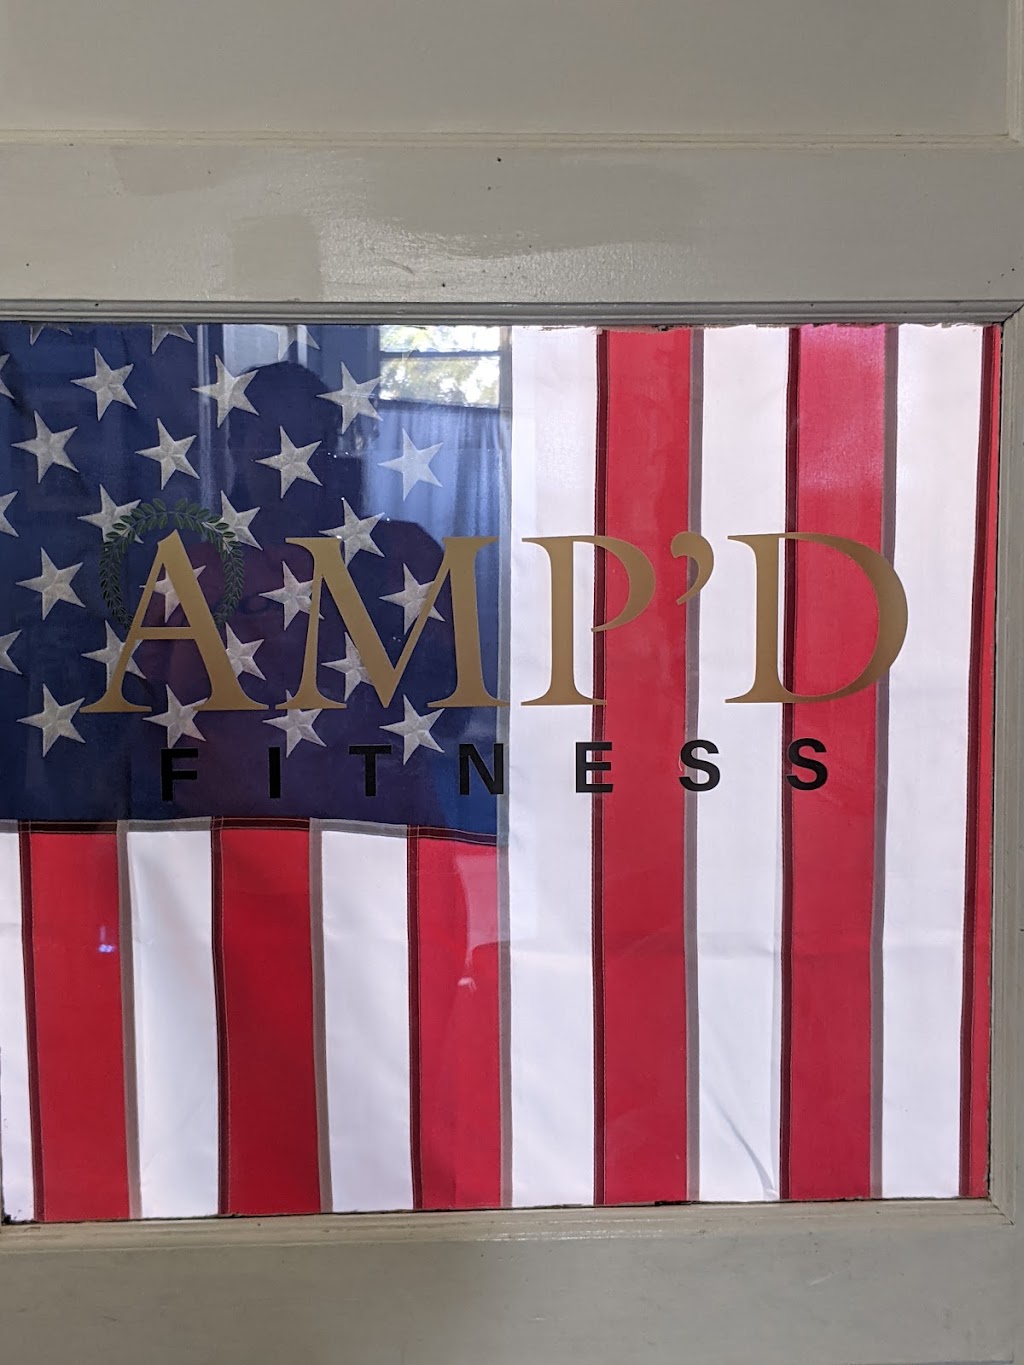 AMPD Fitness | 718 Union Ave Suite 2, Brielle, NJ 08730 | Phone: (914) 282-1570